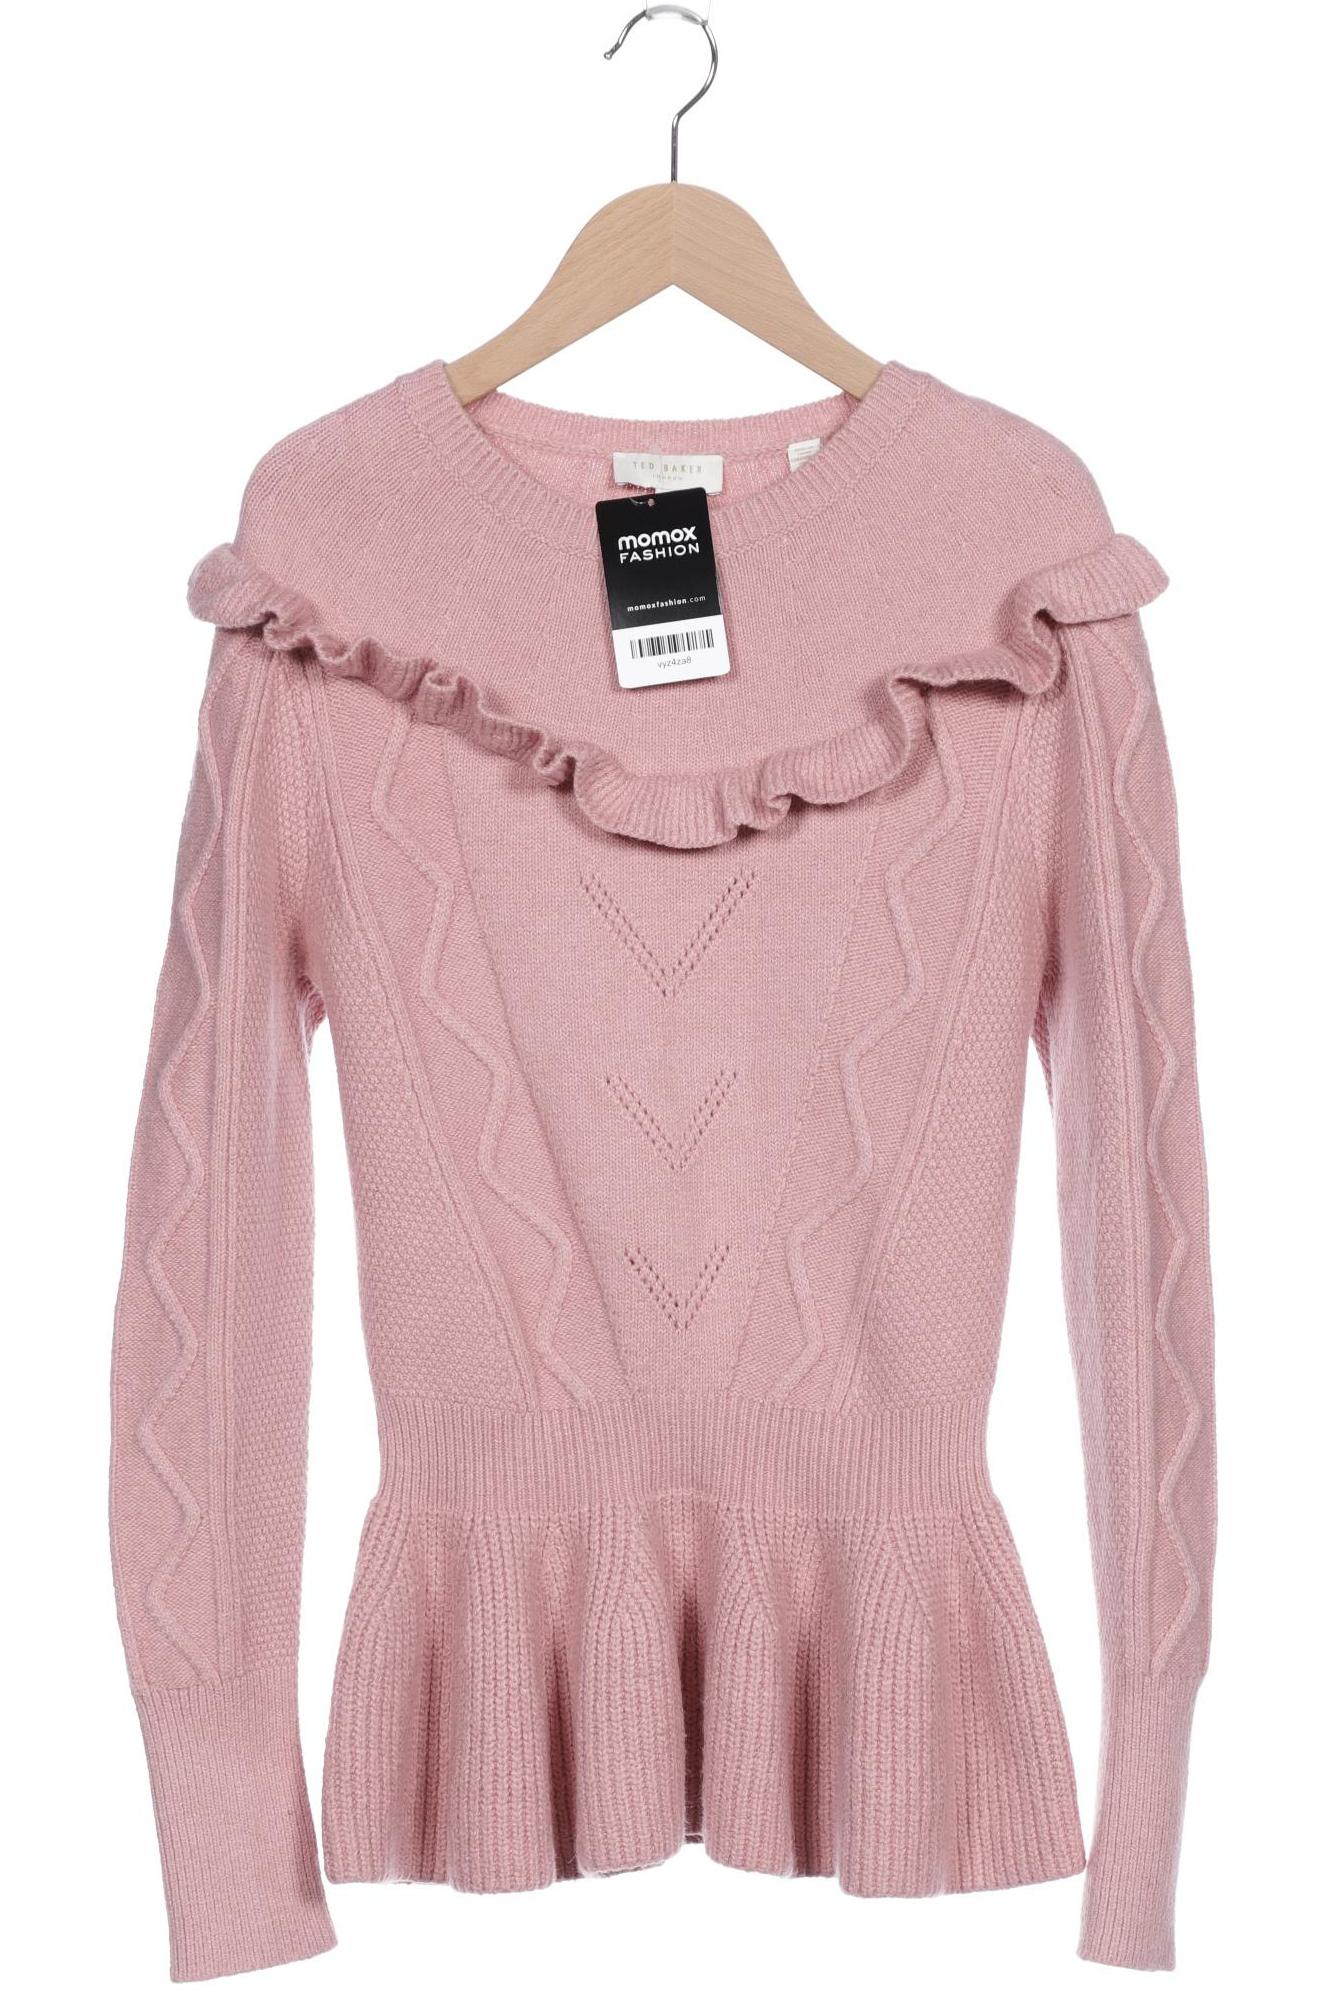 TED BAKER Damen Pullover, pink von Ted Baker